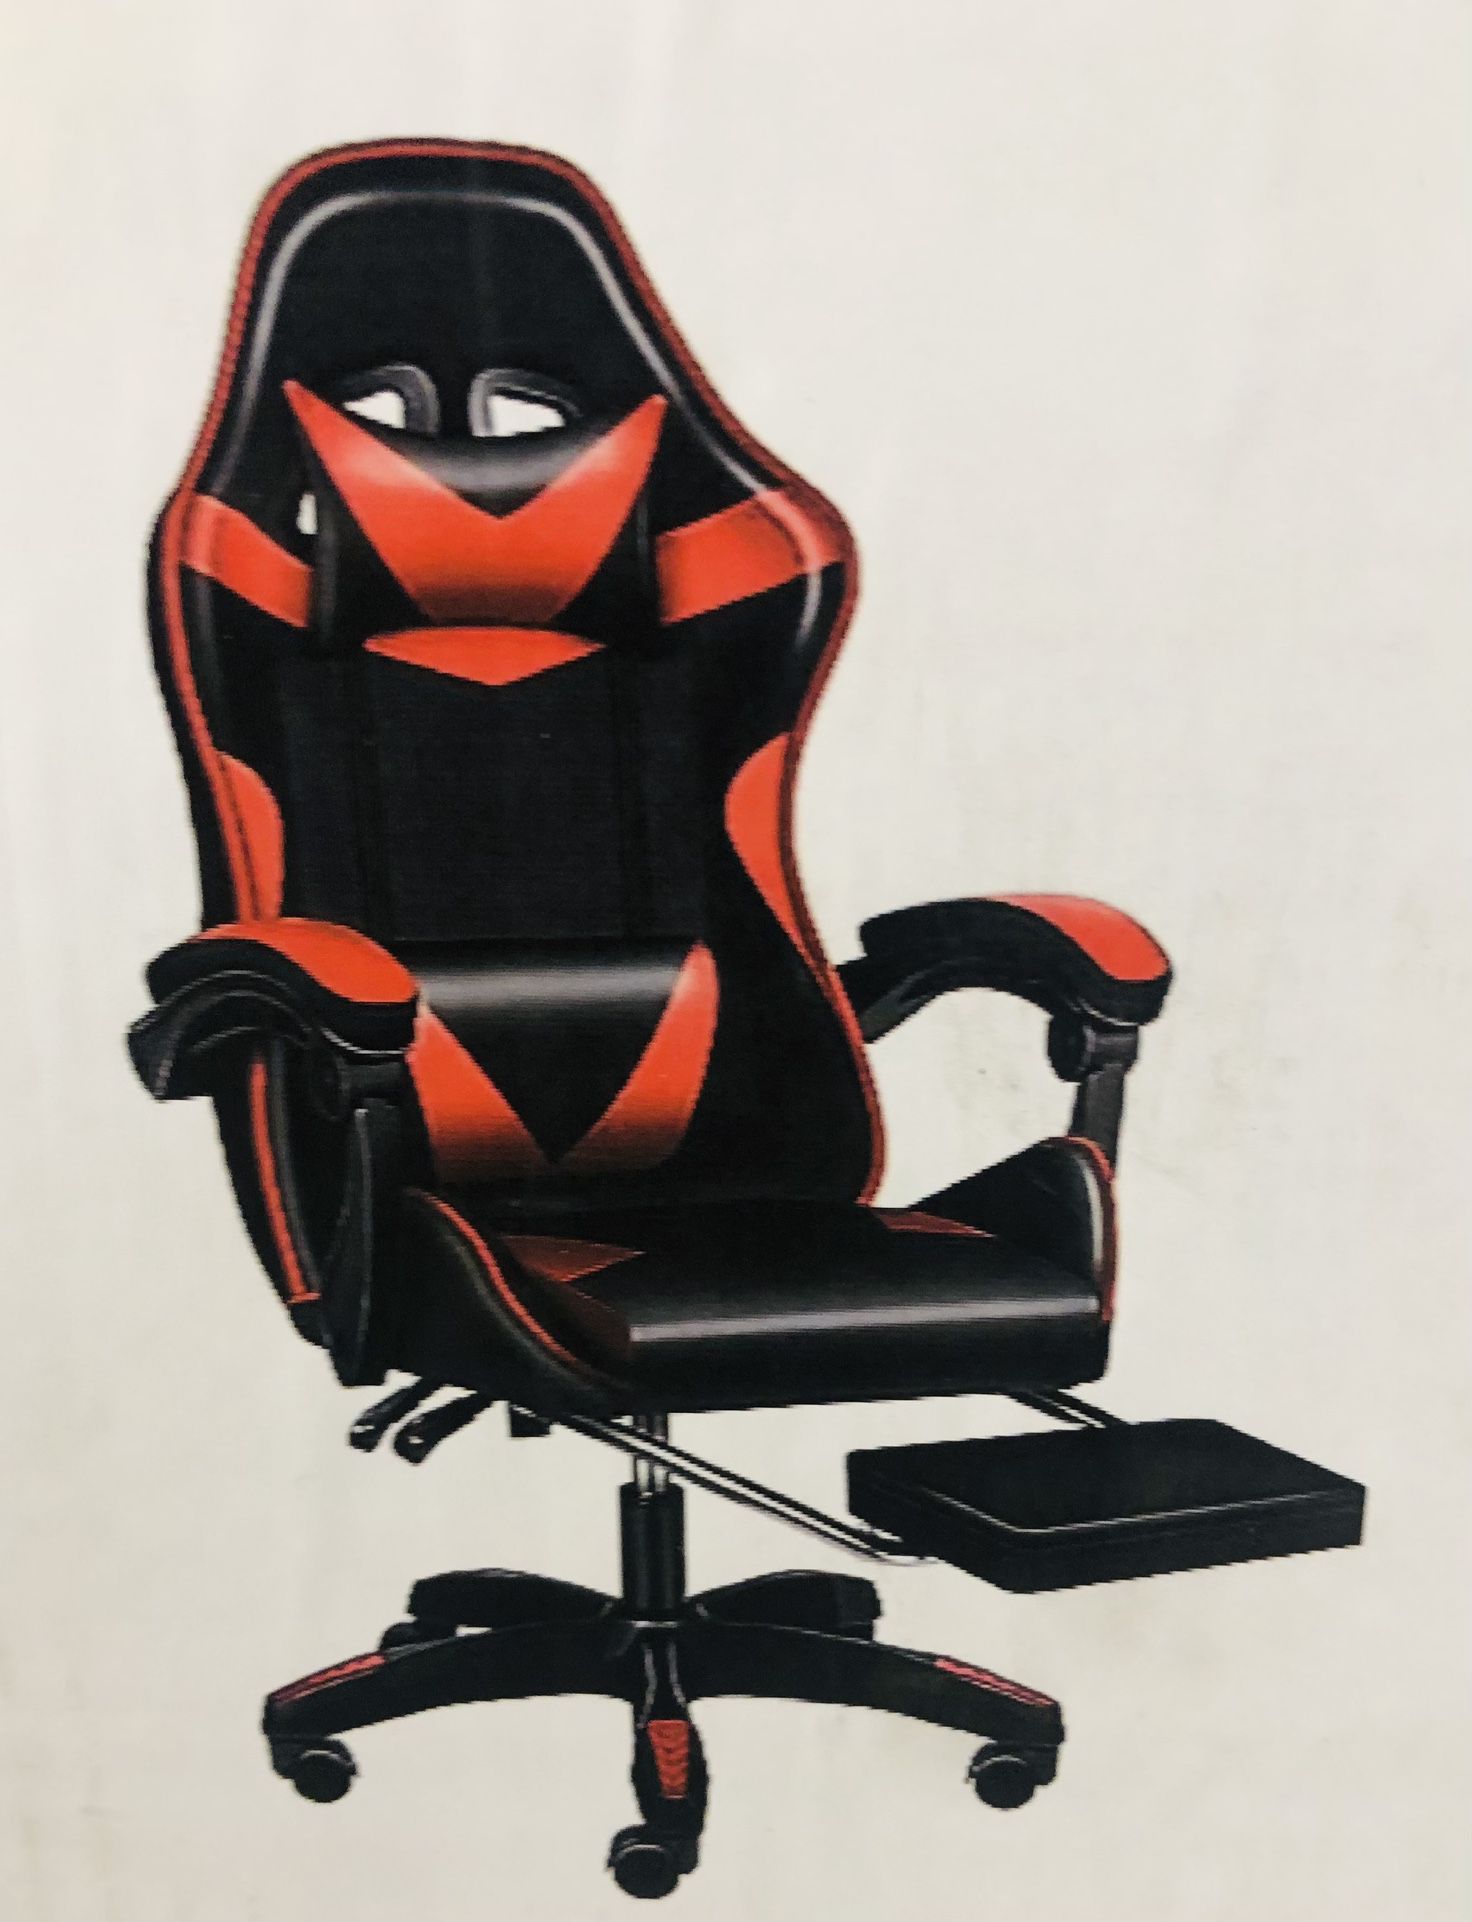 Silla gamer o de escritorio para oficinas.    Gamer or desk chair for offices